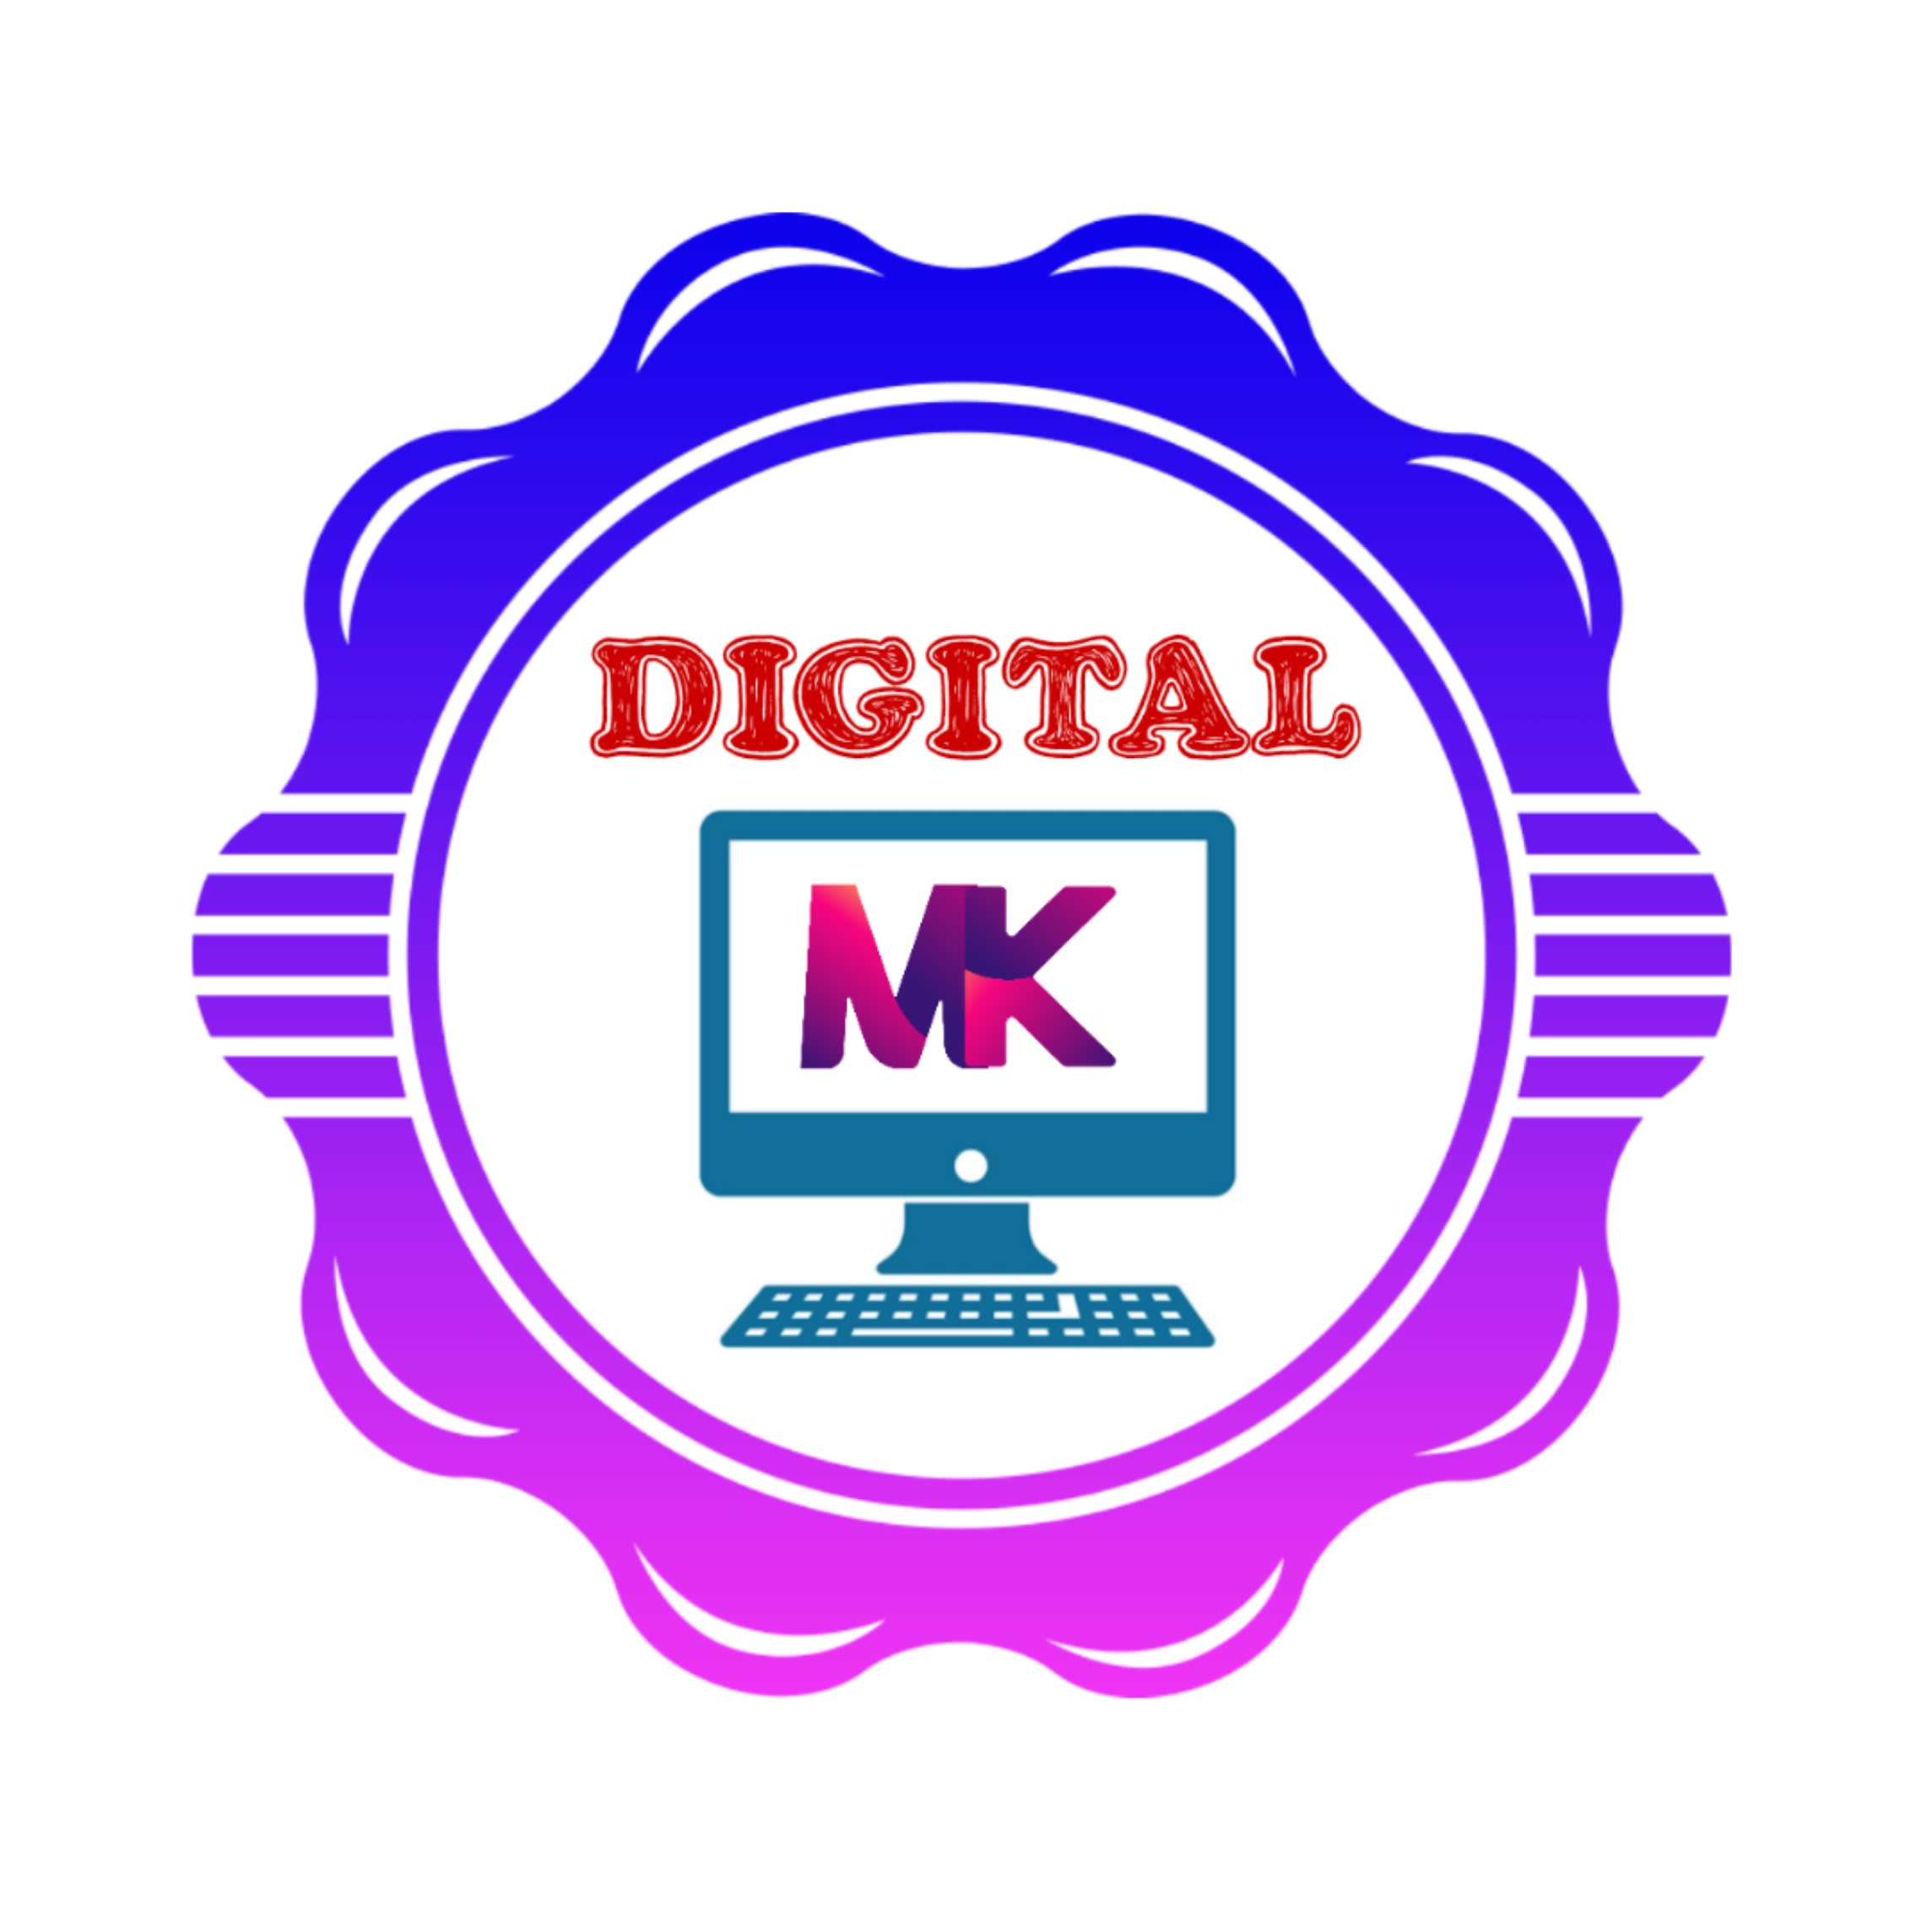 Digital MK